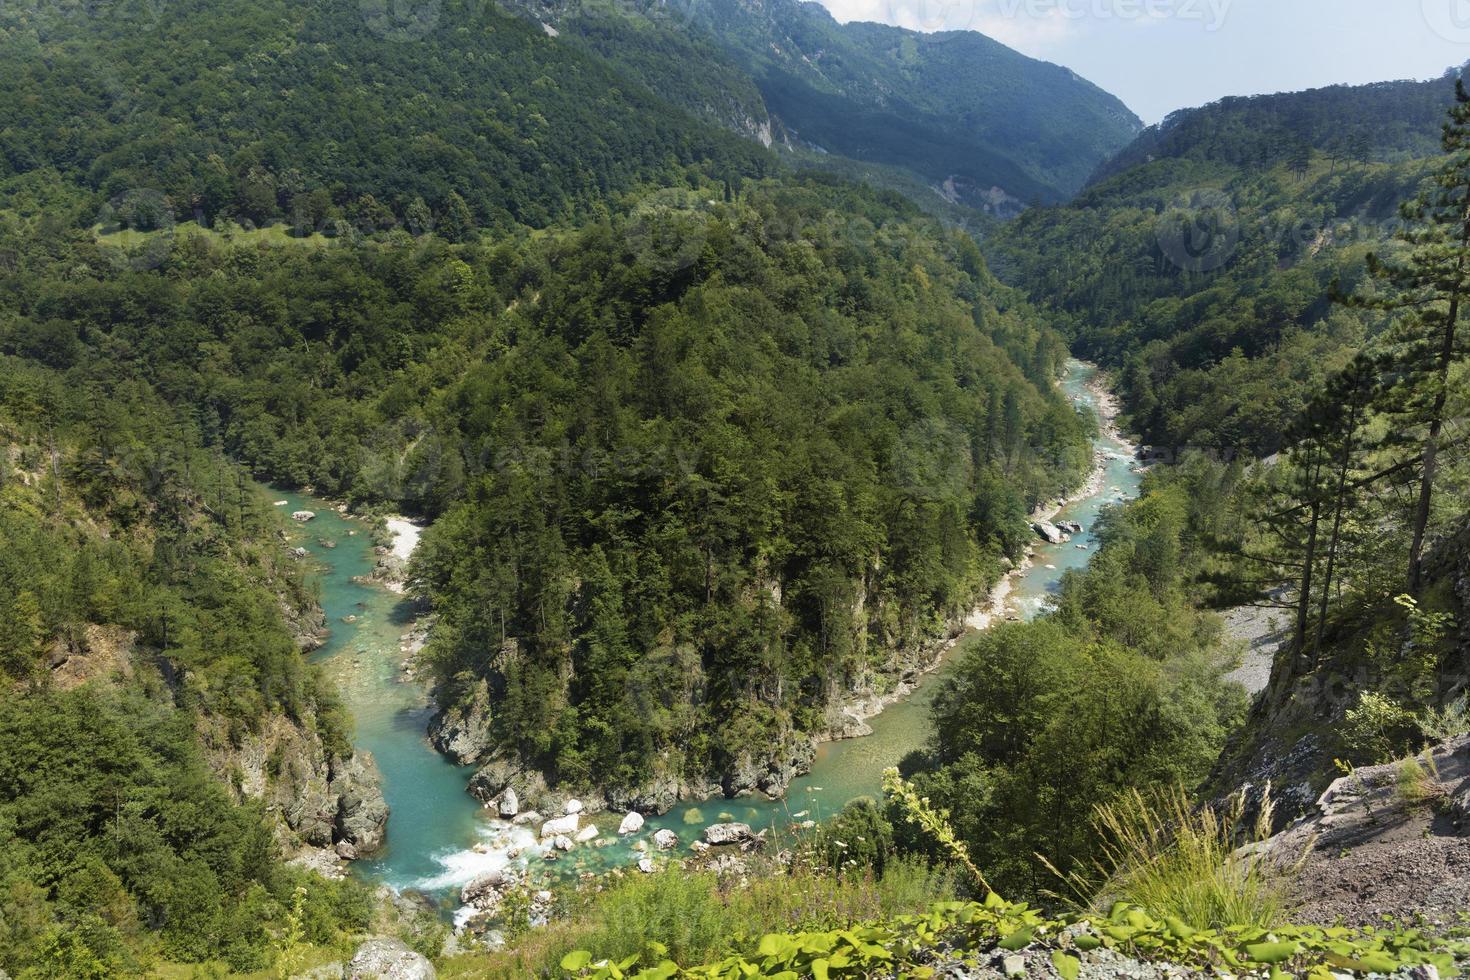 l'eau turquoise pure de la rivière de montagne surmonte les rapides de pierre. concept écologique, nature pure. photo